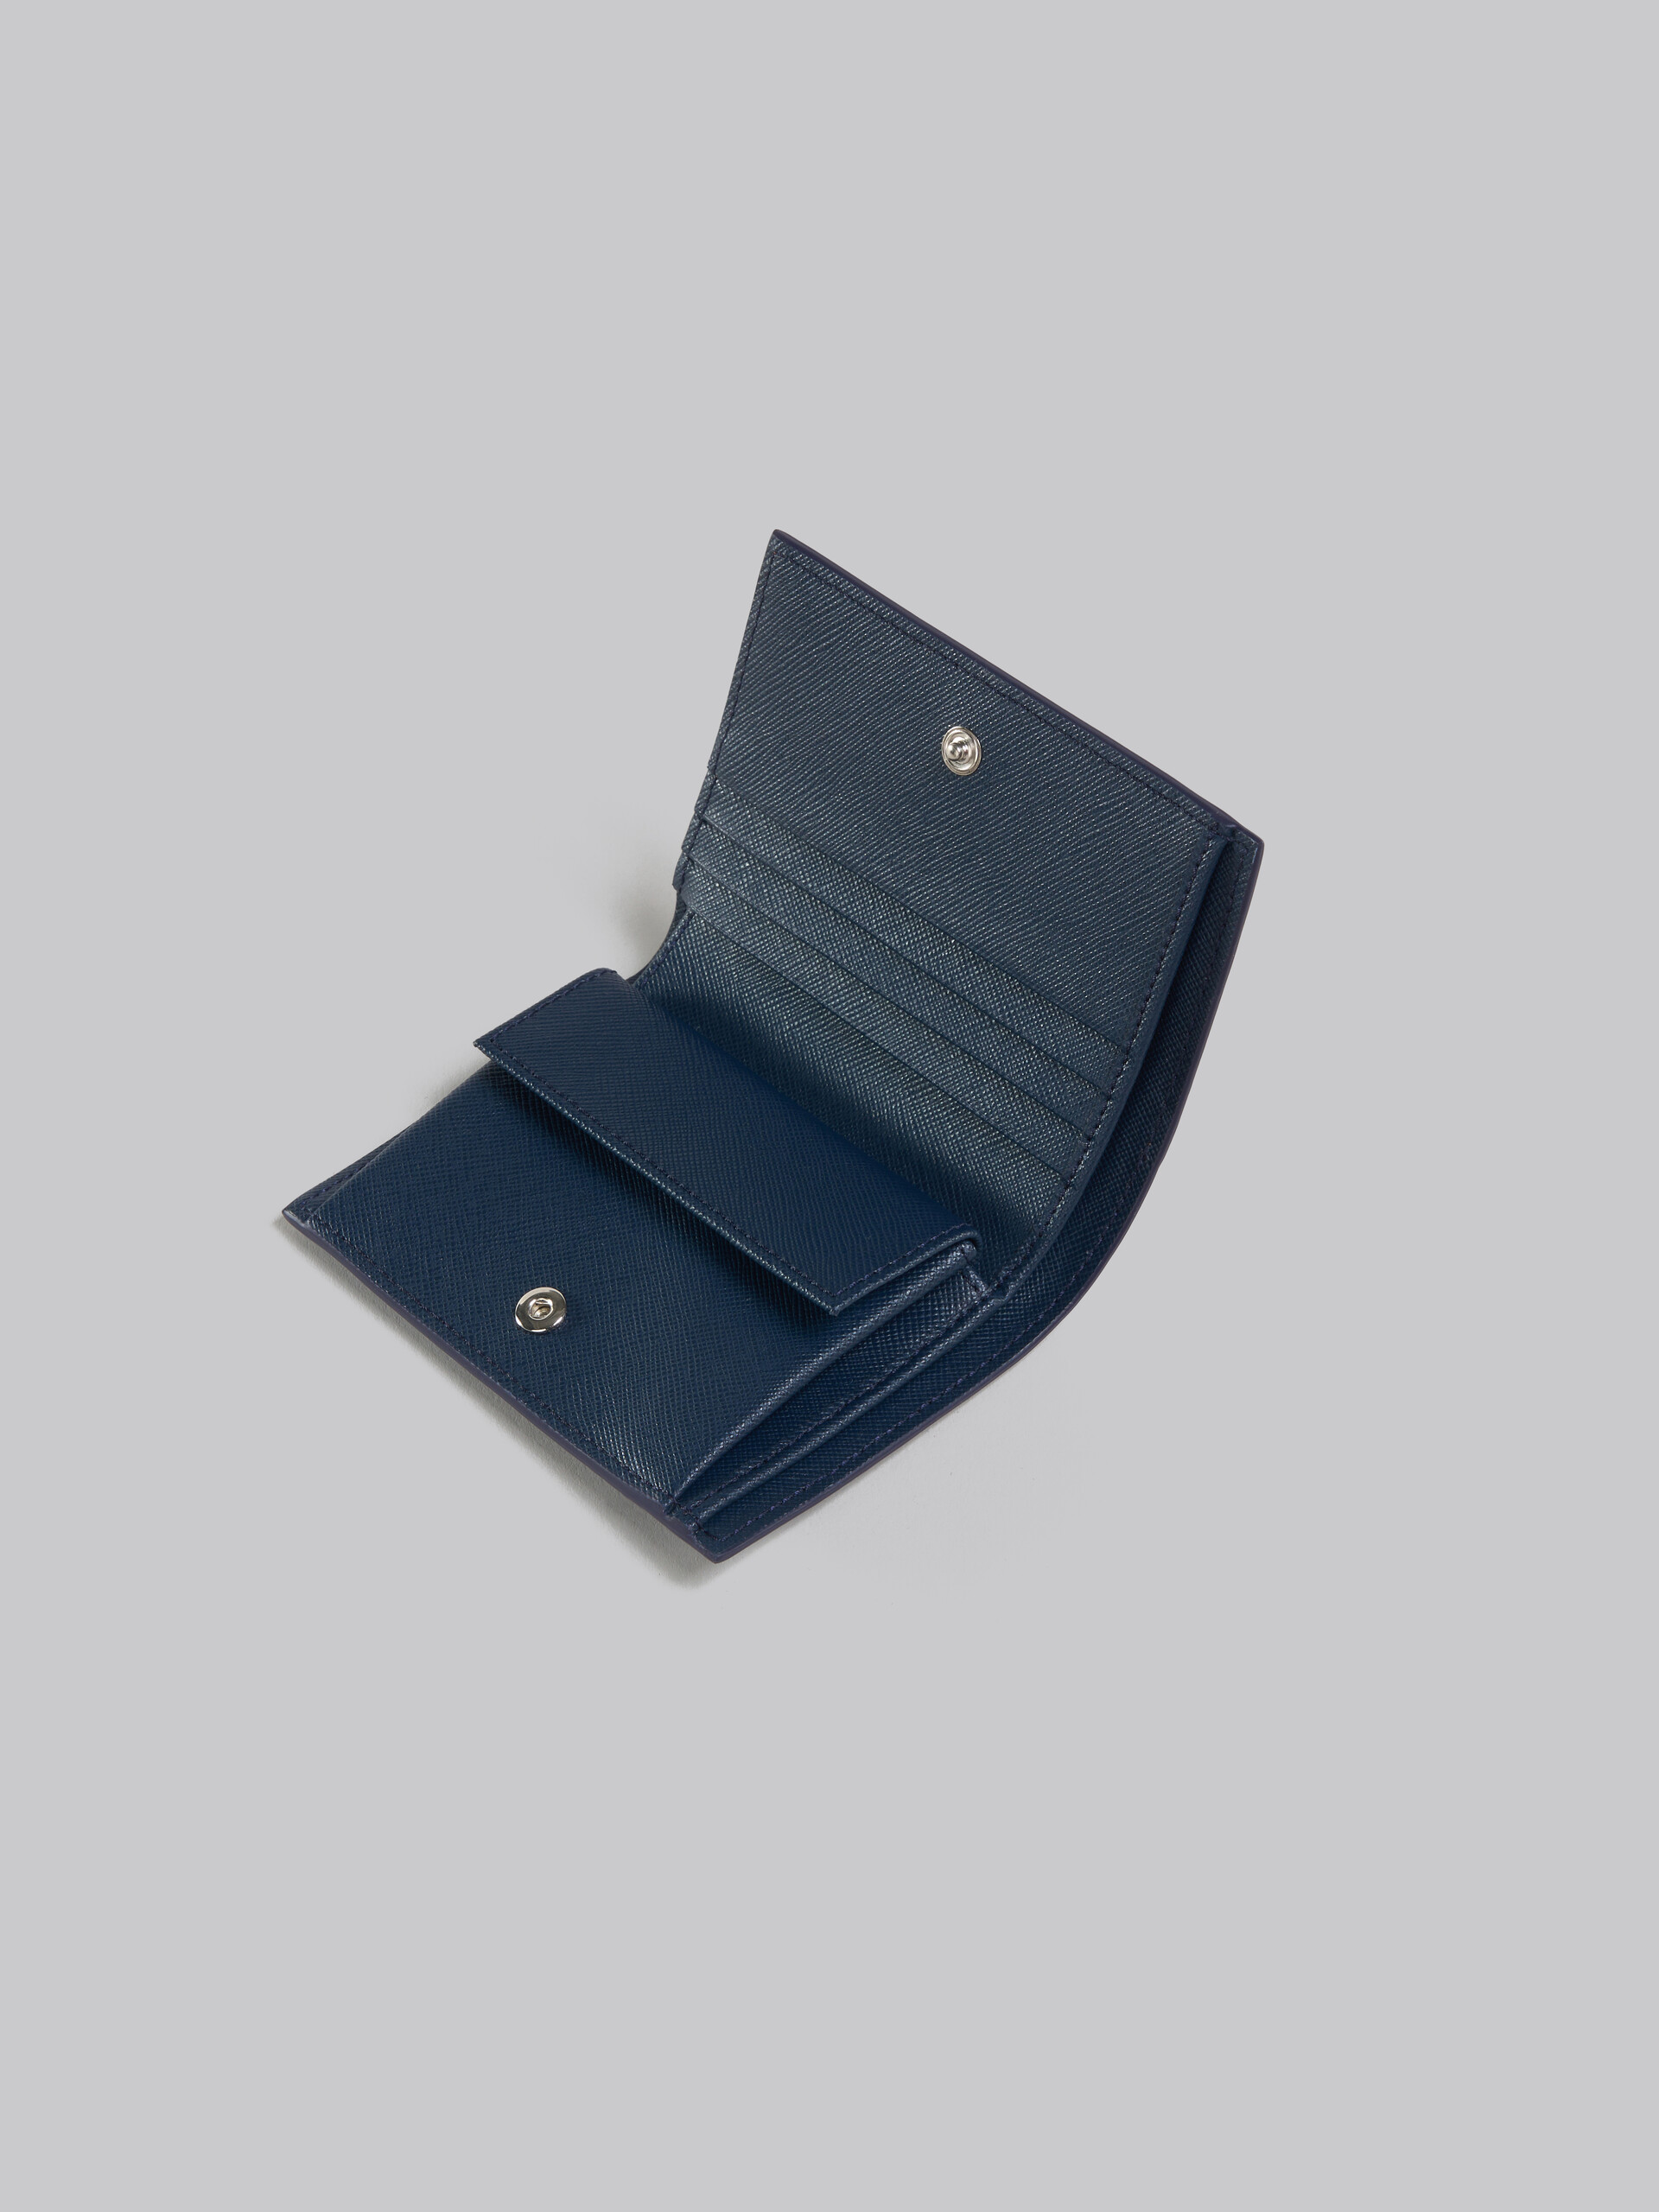 ディープブルー グリーン サフィアーノレザー製 二つ折りウォレット - 財布 - Image 4